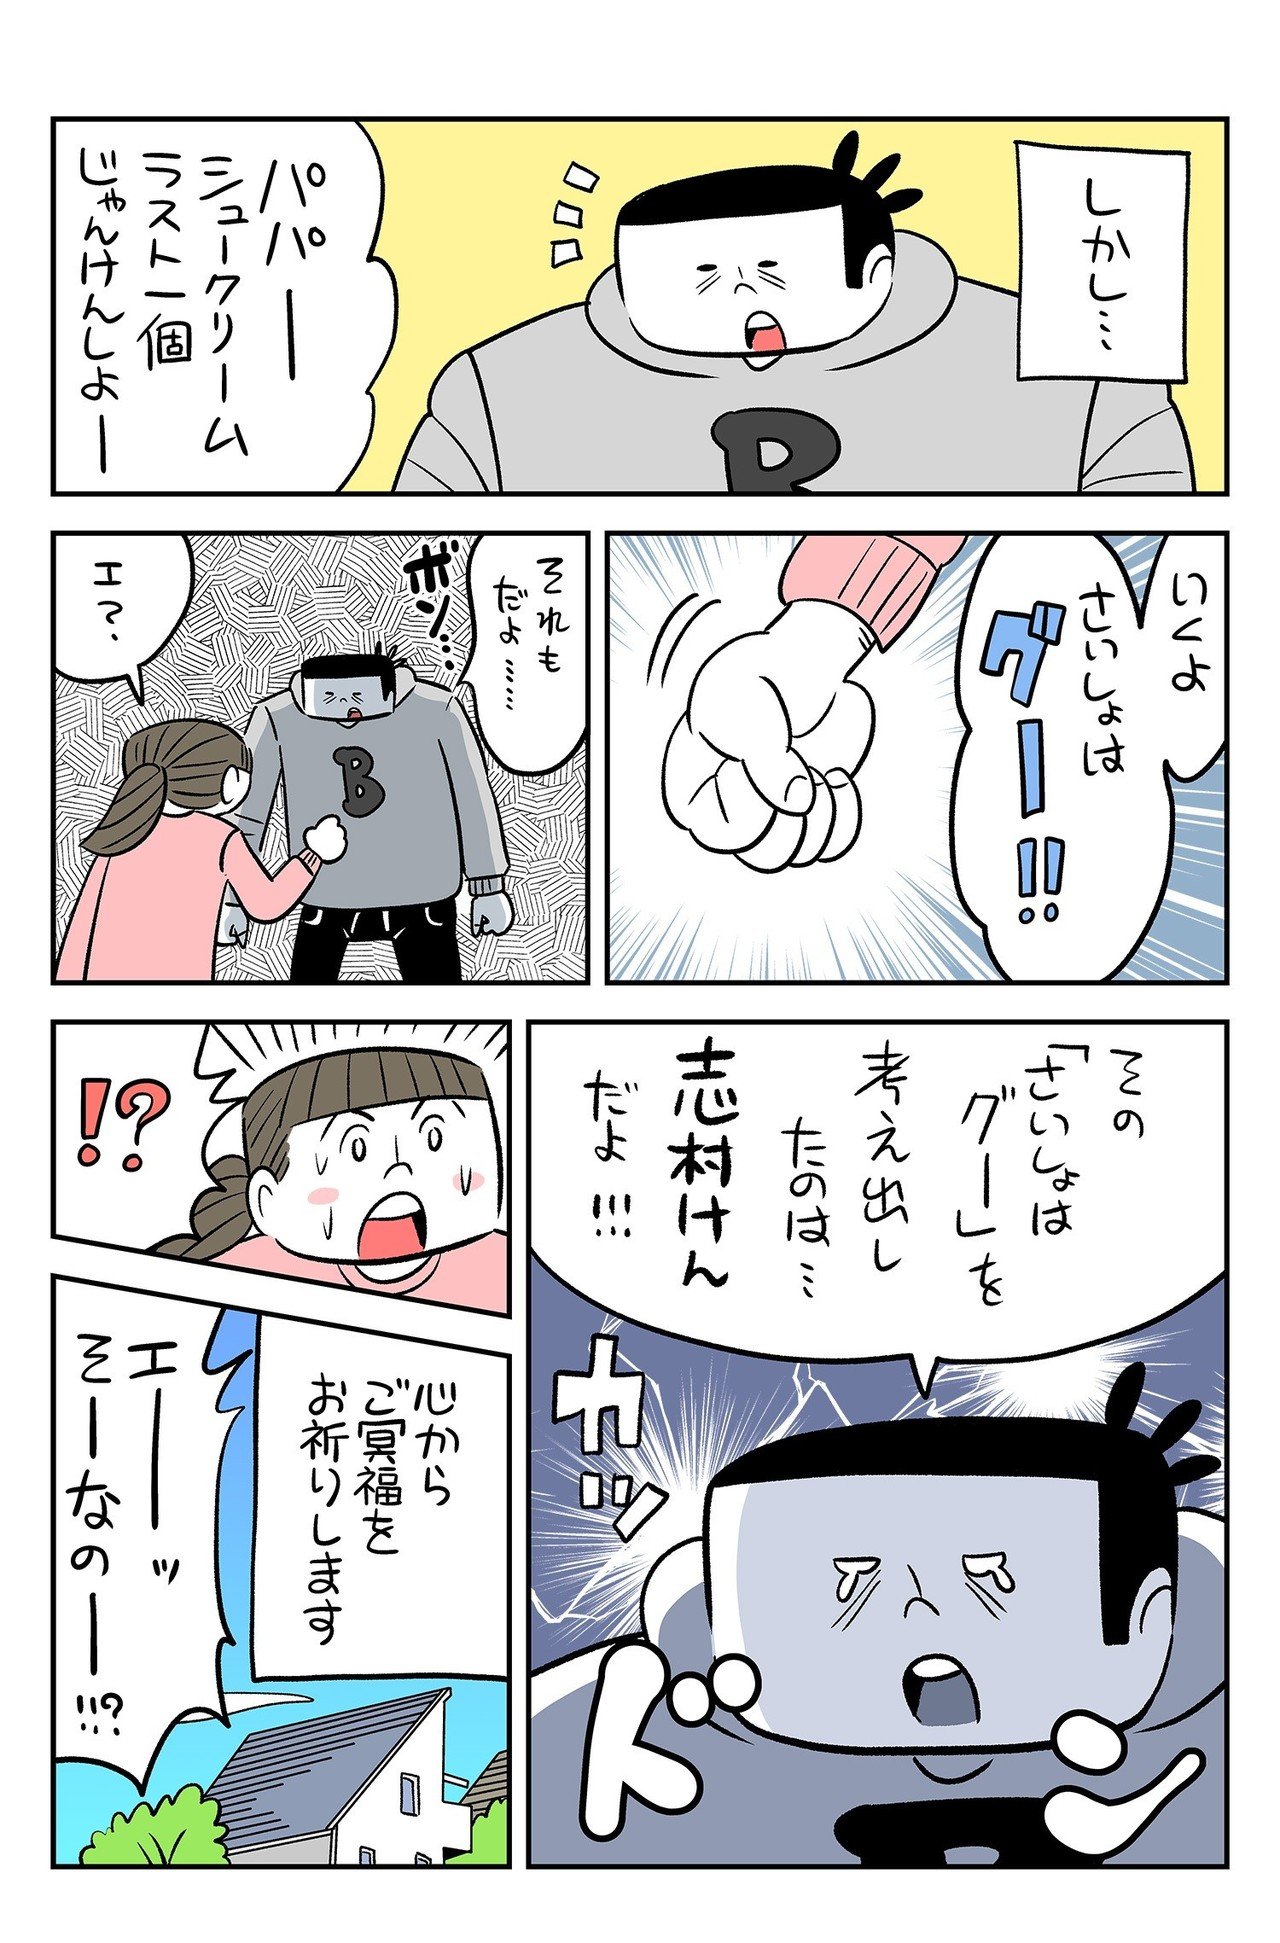 漫週記 あるイラストレーター 漫画家の日常 年1月 3月まとめ 奈良裕己 Note